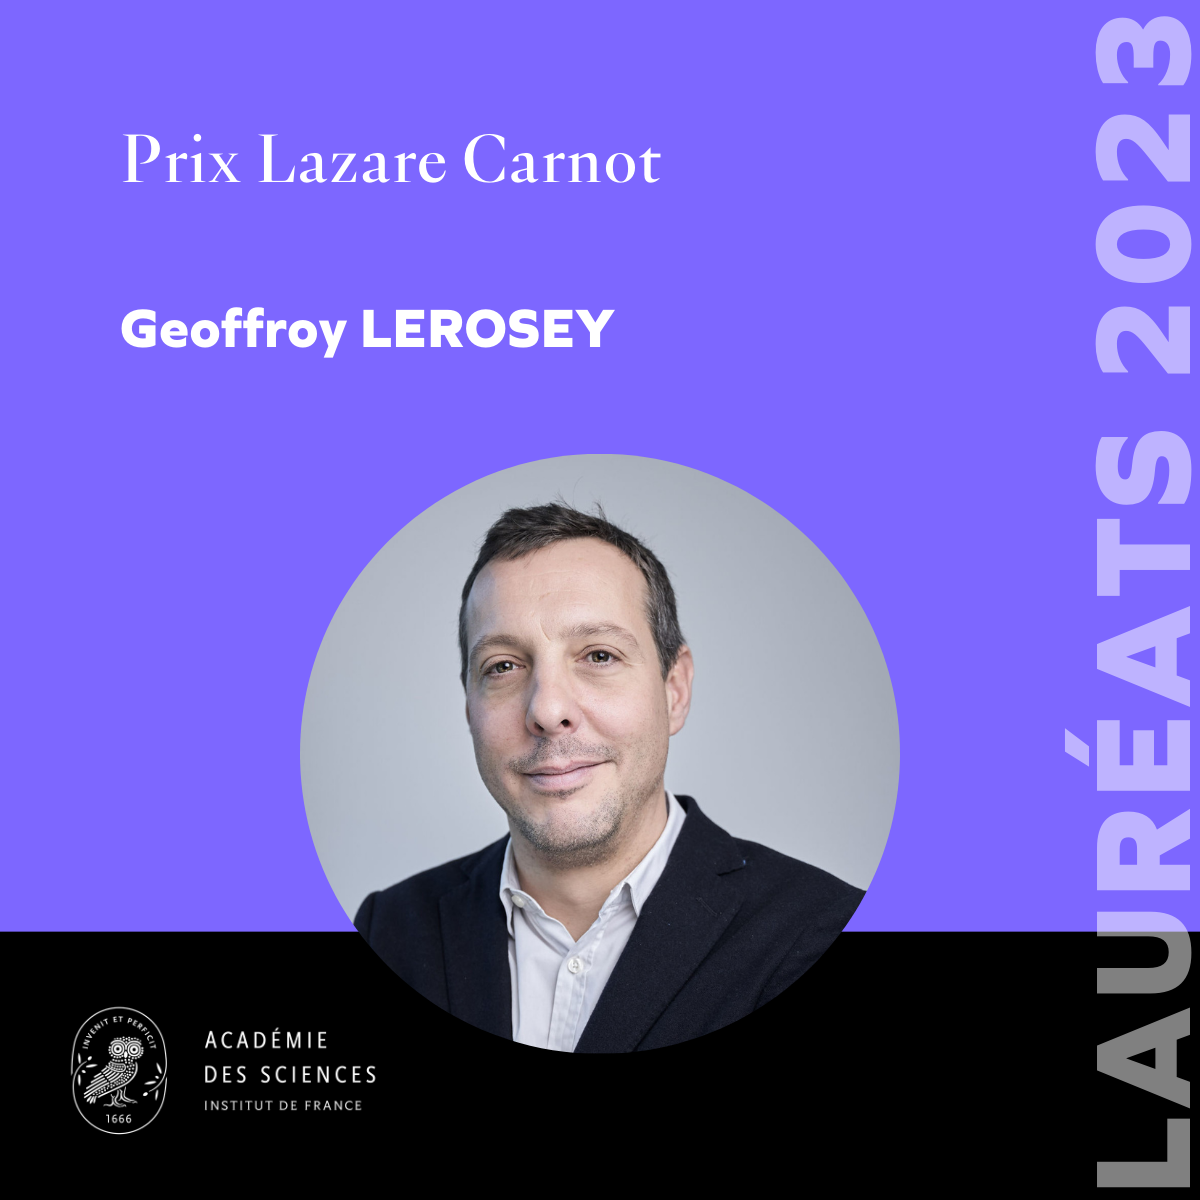 Geoffroy Lerosey